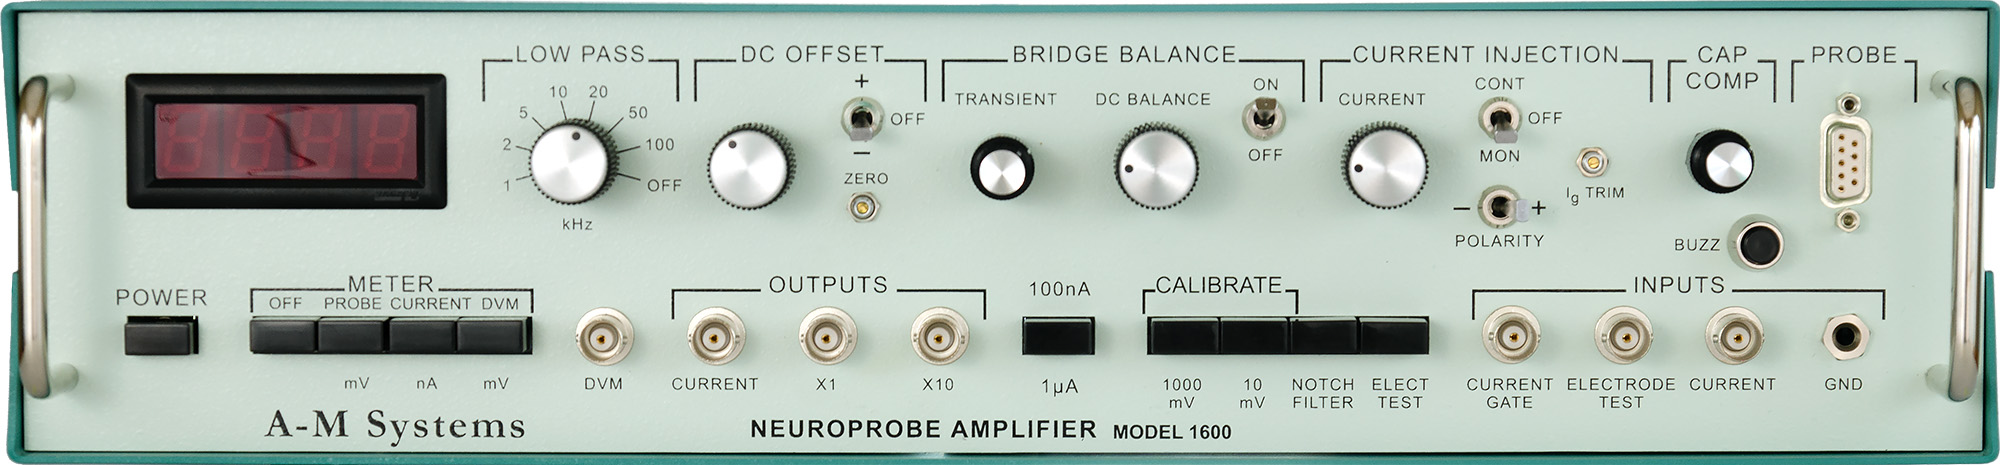 Model 1600 Neuroprobe Amplifier Test